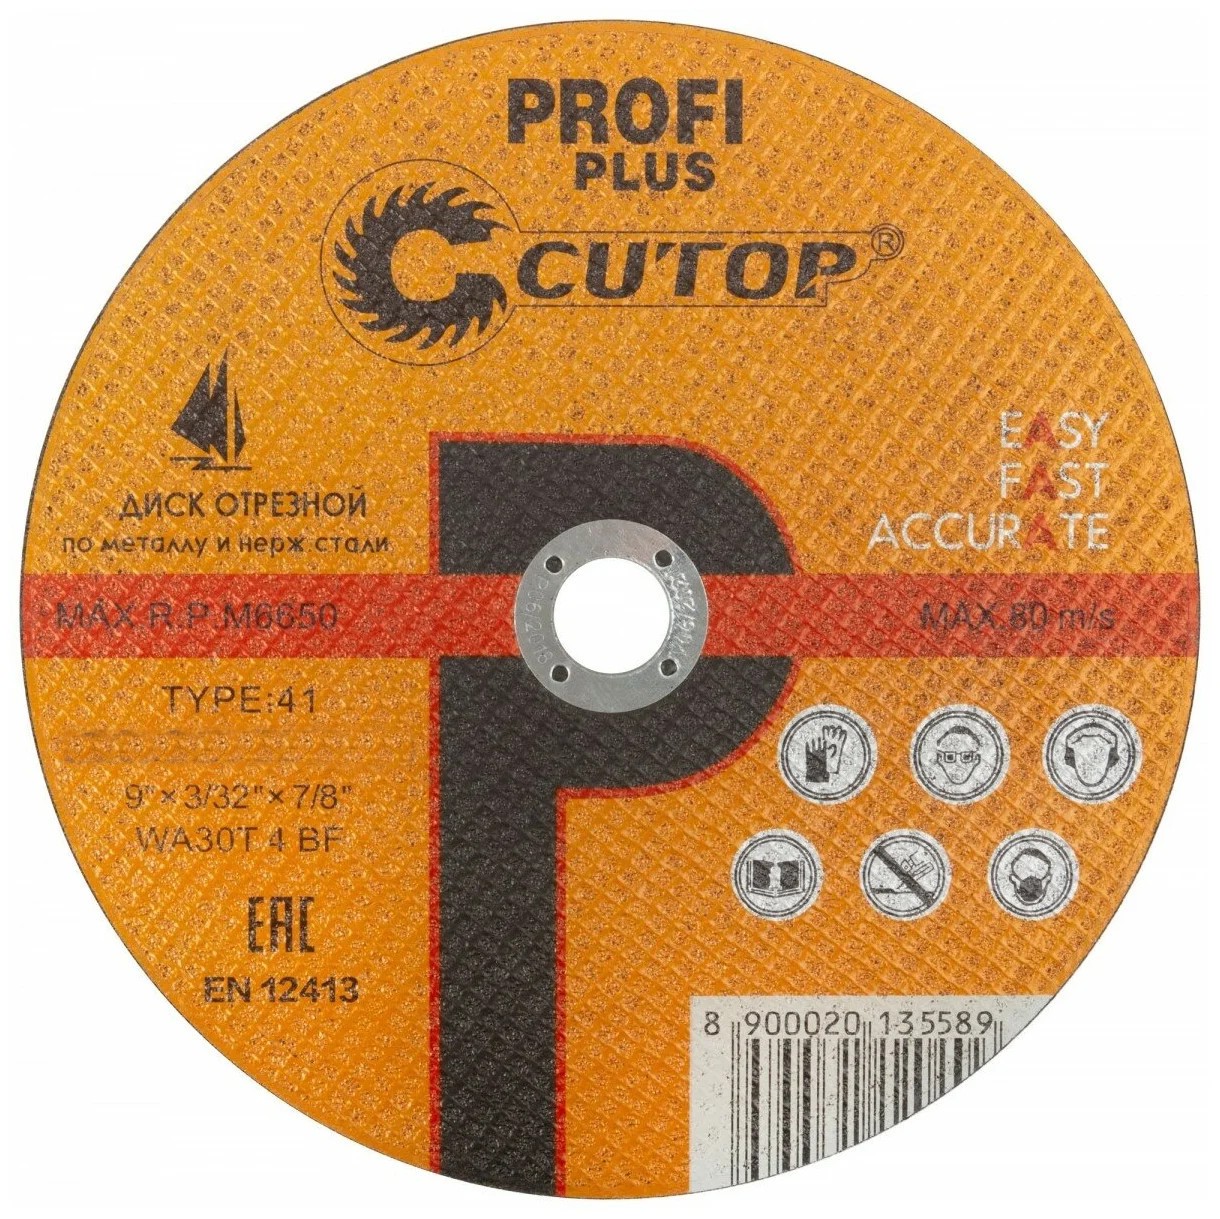 Диск отрезной по металлу и нержавеющей стали CUTOP Profi Plus